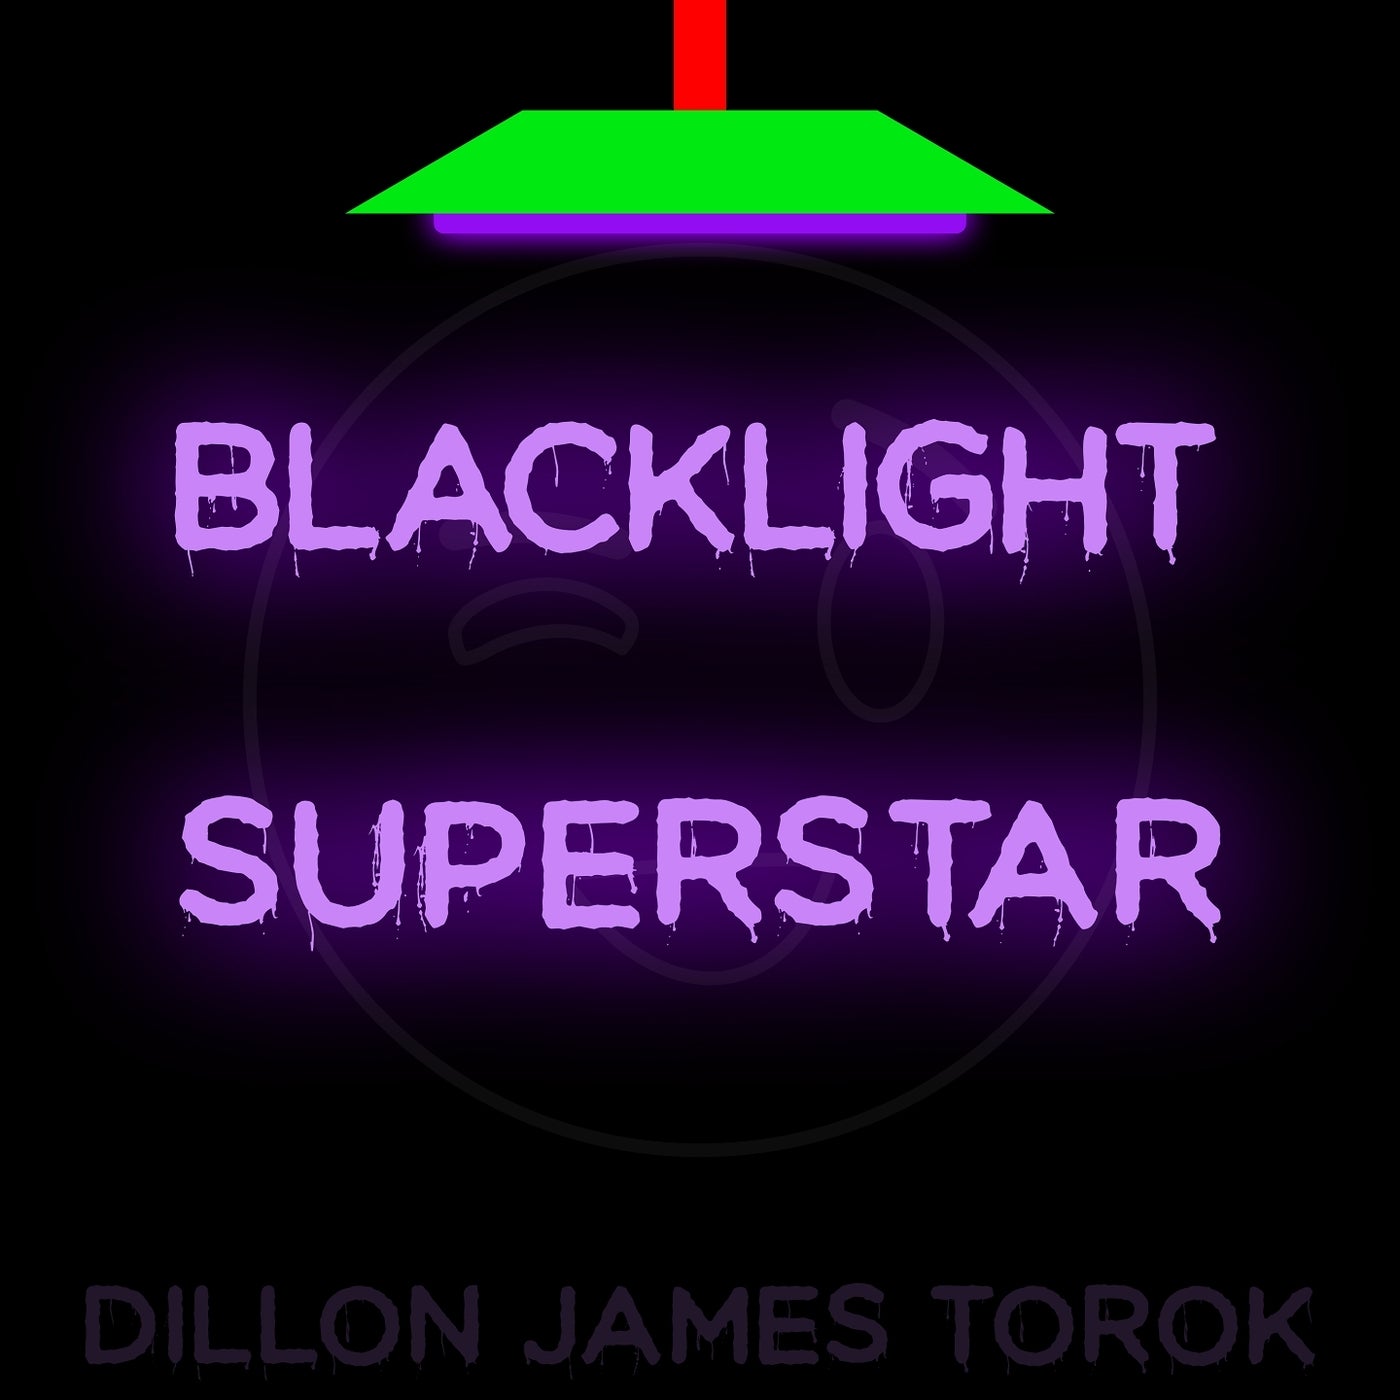 Backlight Superstar